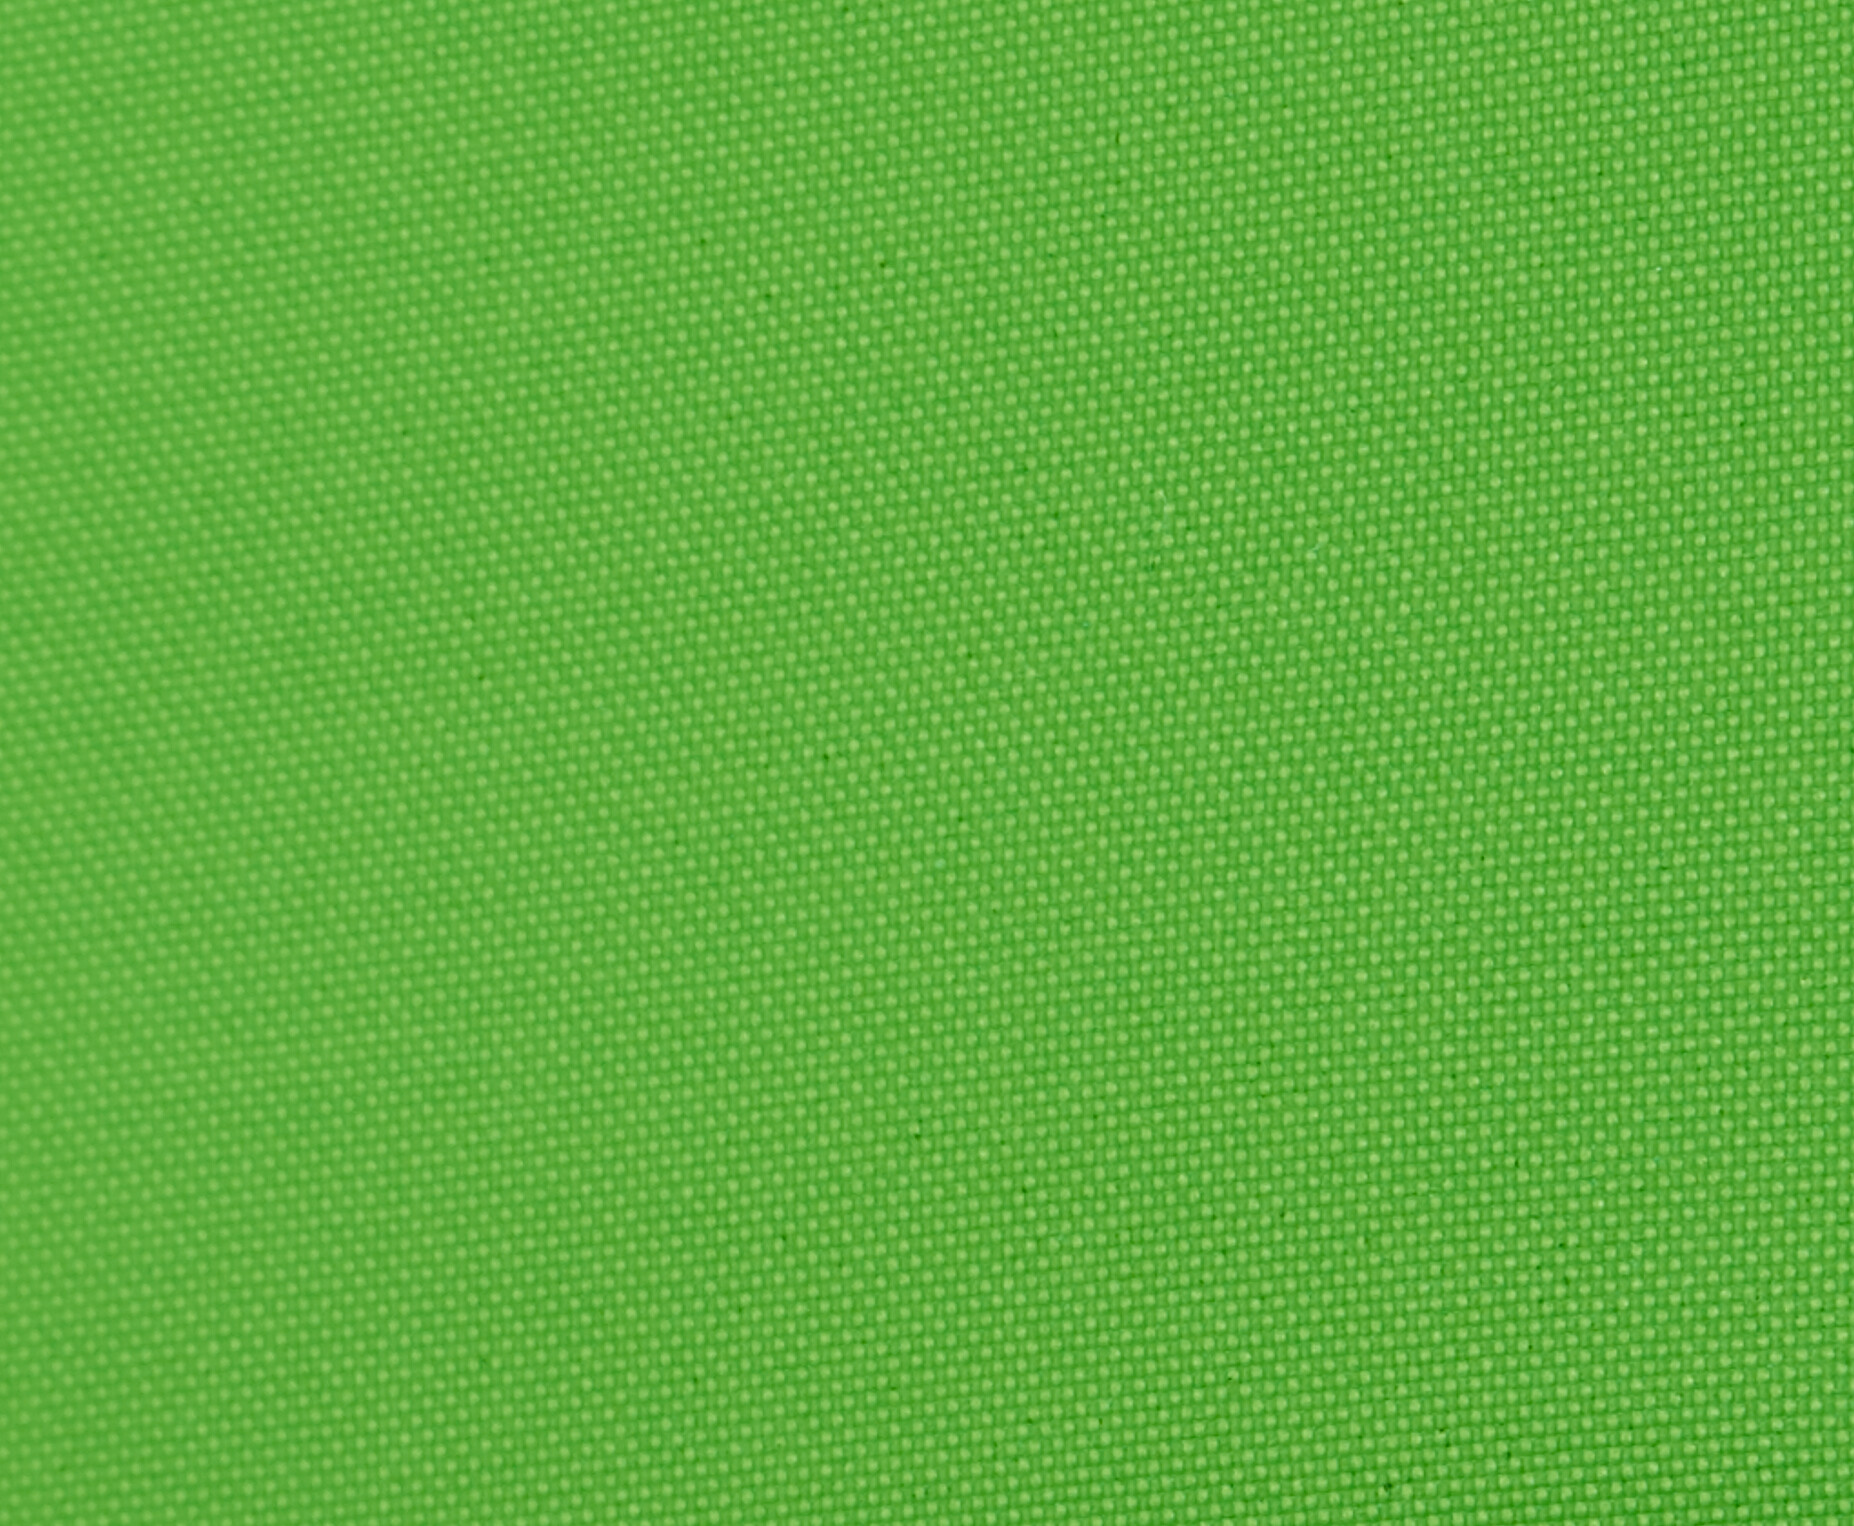 Celexon Mobile Lite Chroma Key Green Screen X Cm Visunext De